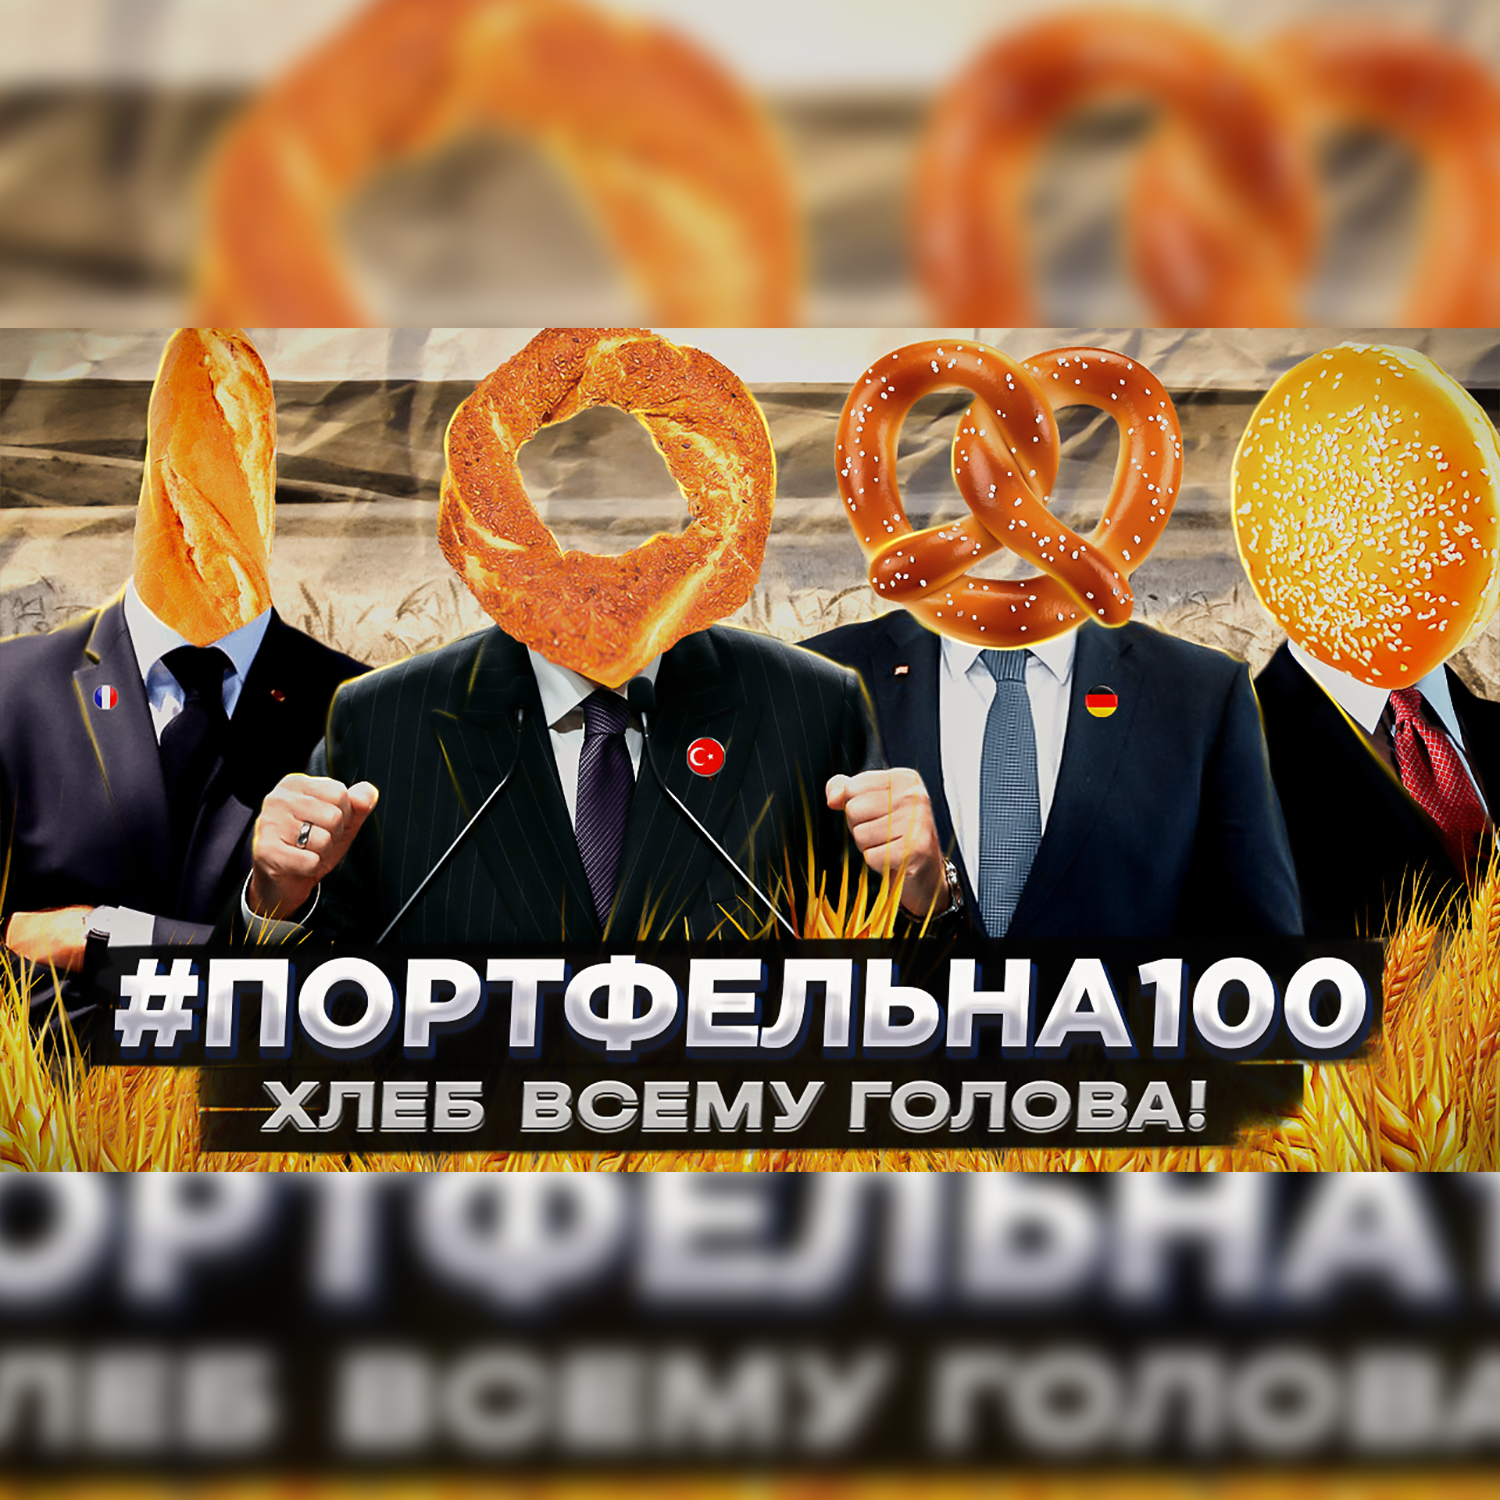 Хлеб всему голова! #Портфельна100 podcast poster